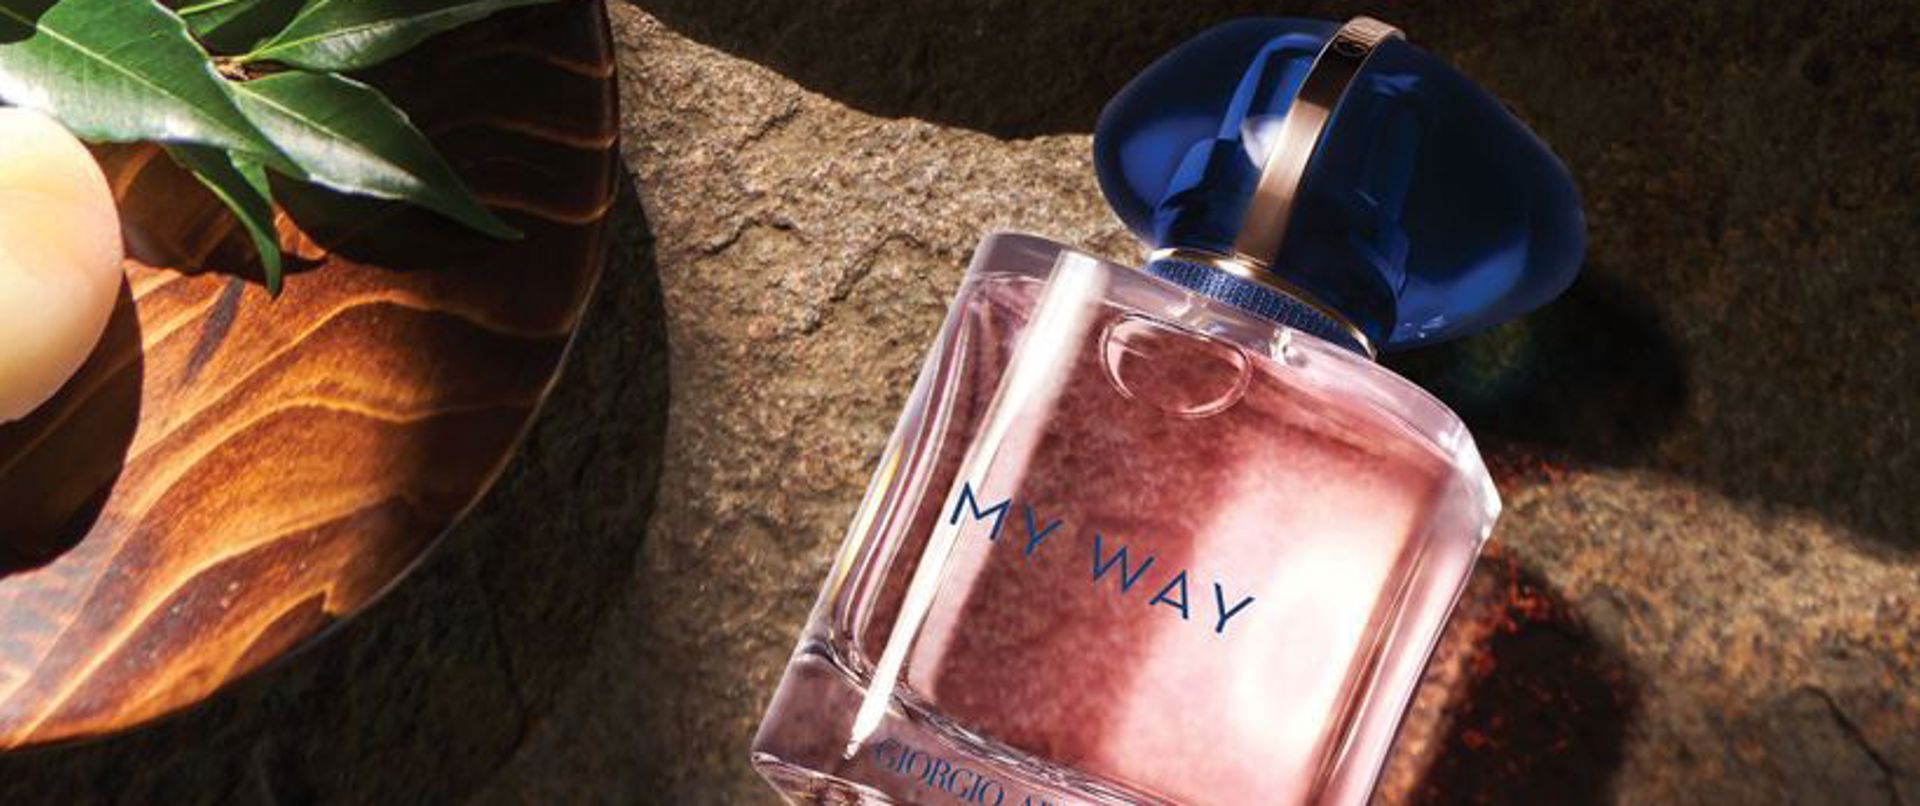 Armani'nin Yeni Kadın Parfümü My Way ile Tanışıyoruz!